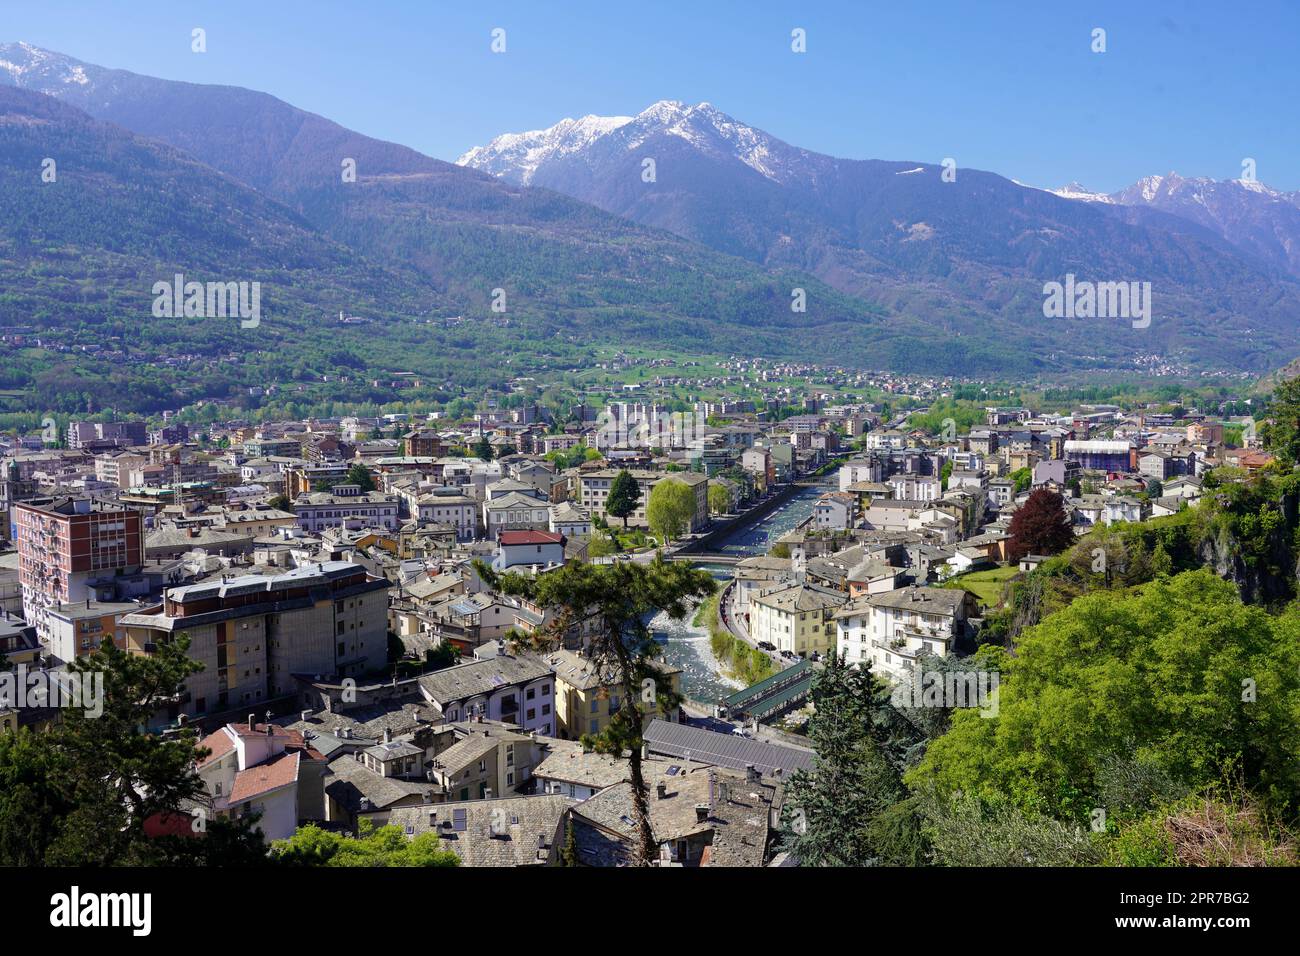 Vue panoramique aérienne de la ville de Sondrio dans la vallée de Valtellina, Lombardie, Italie Banque D'Images